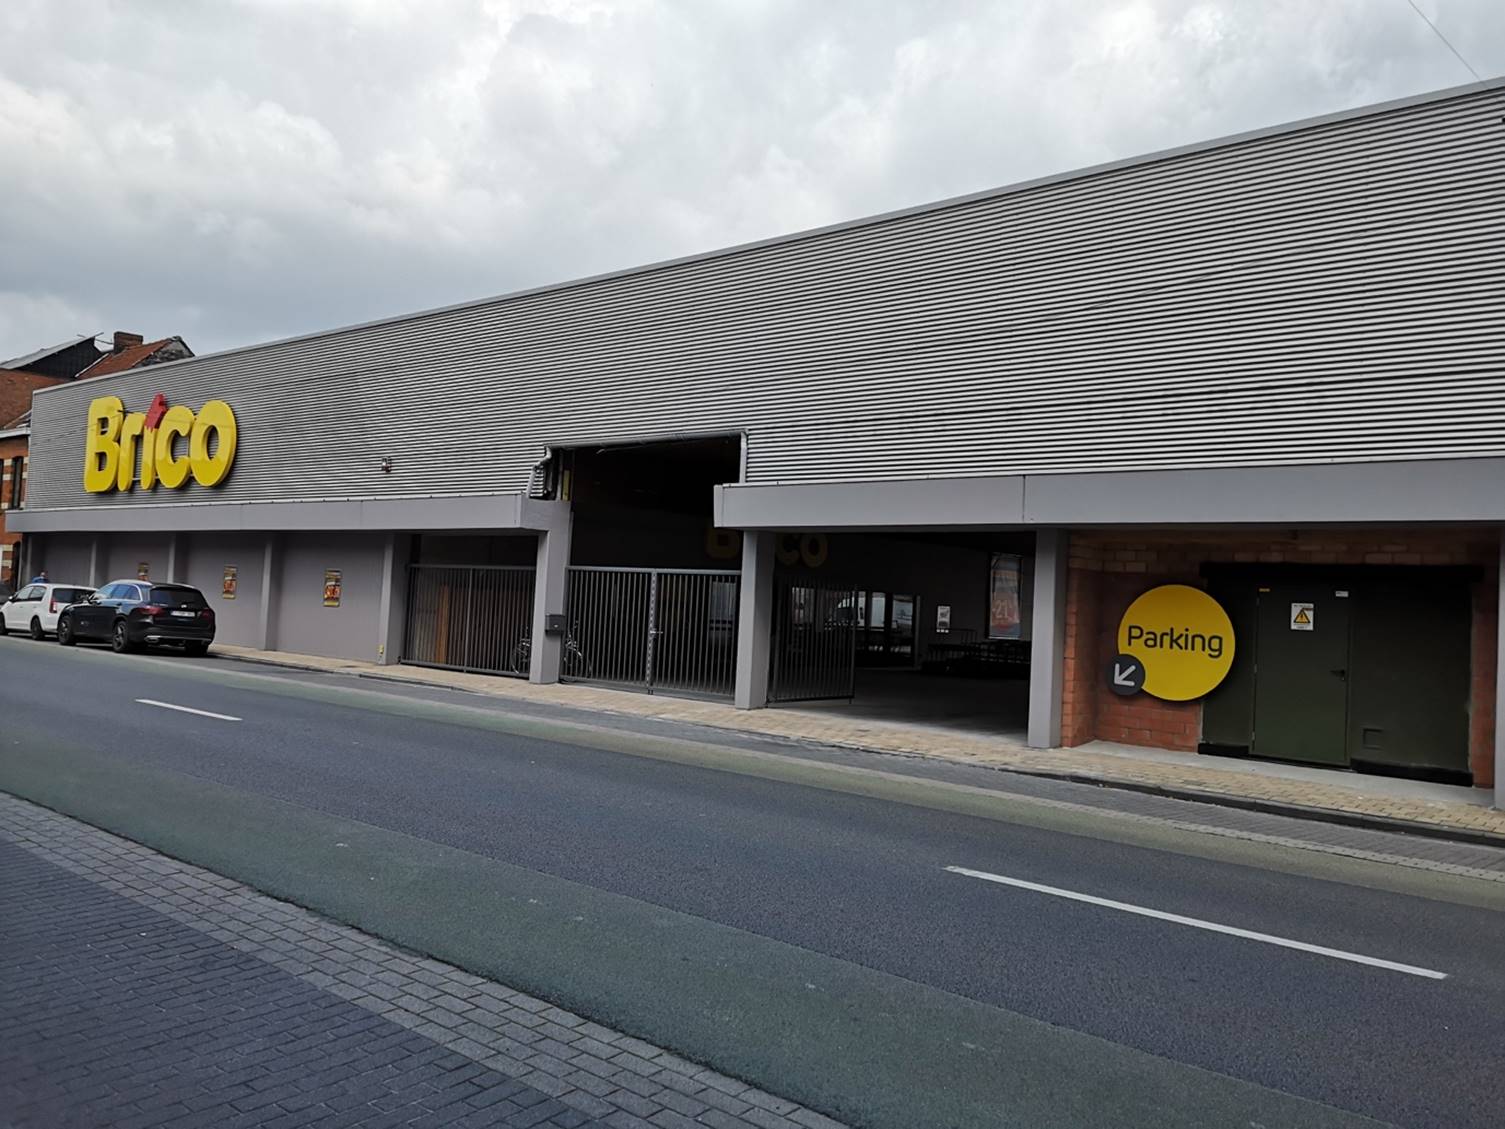 Brico opent een franchisewinkel in Menen